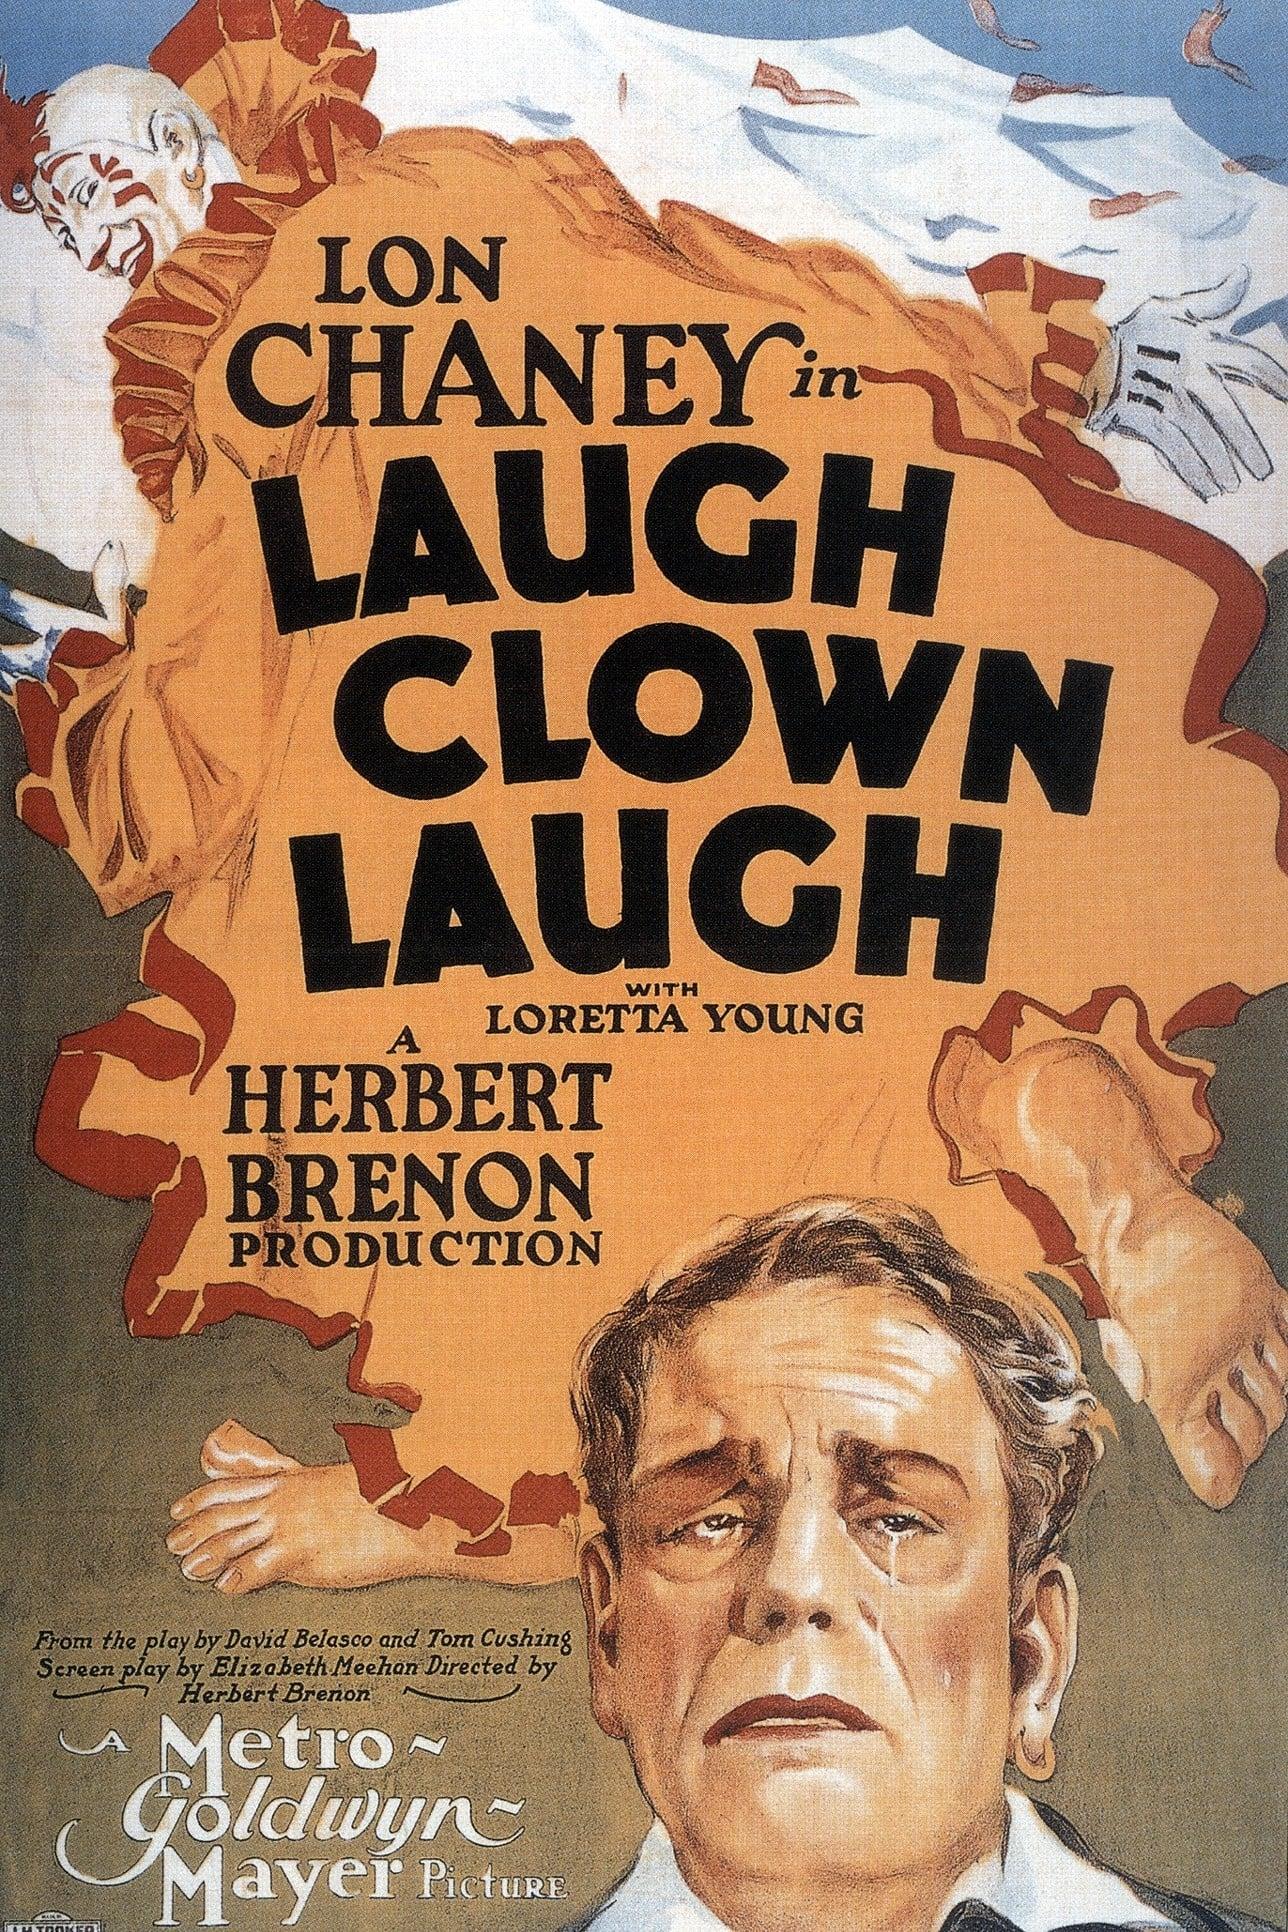 Laugh, Clown, Laugh poster